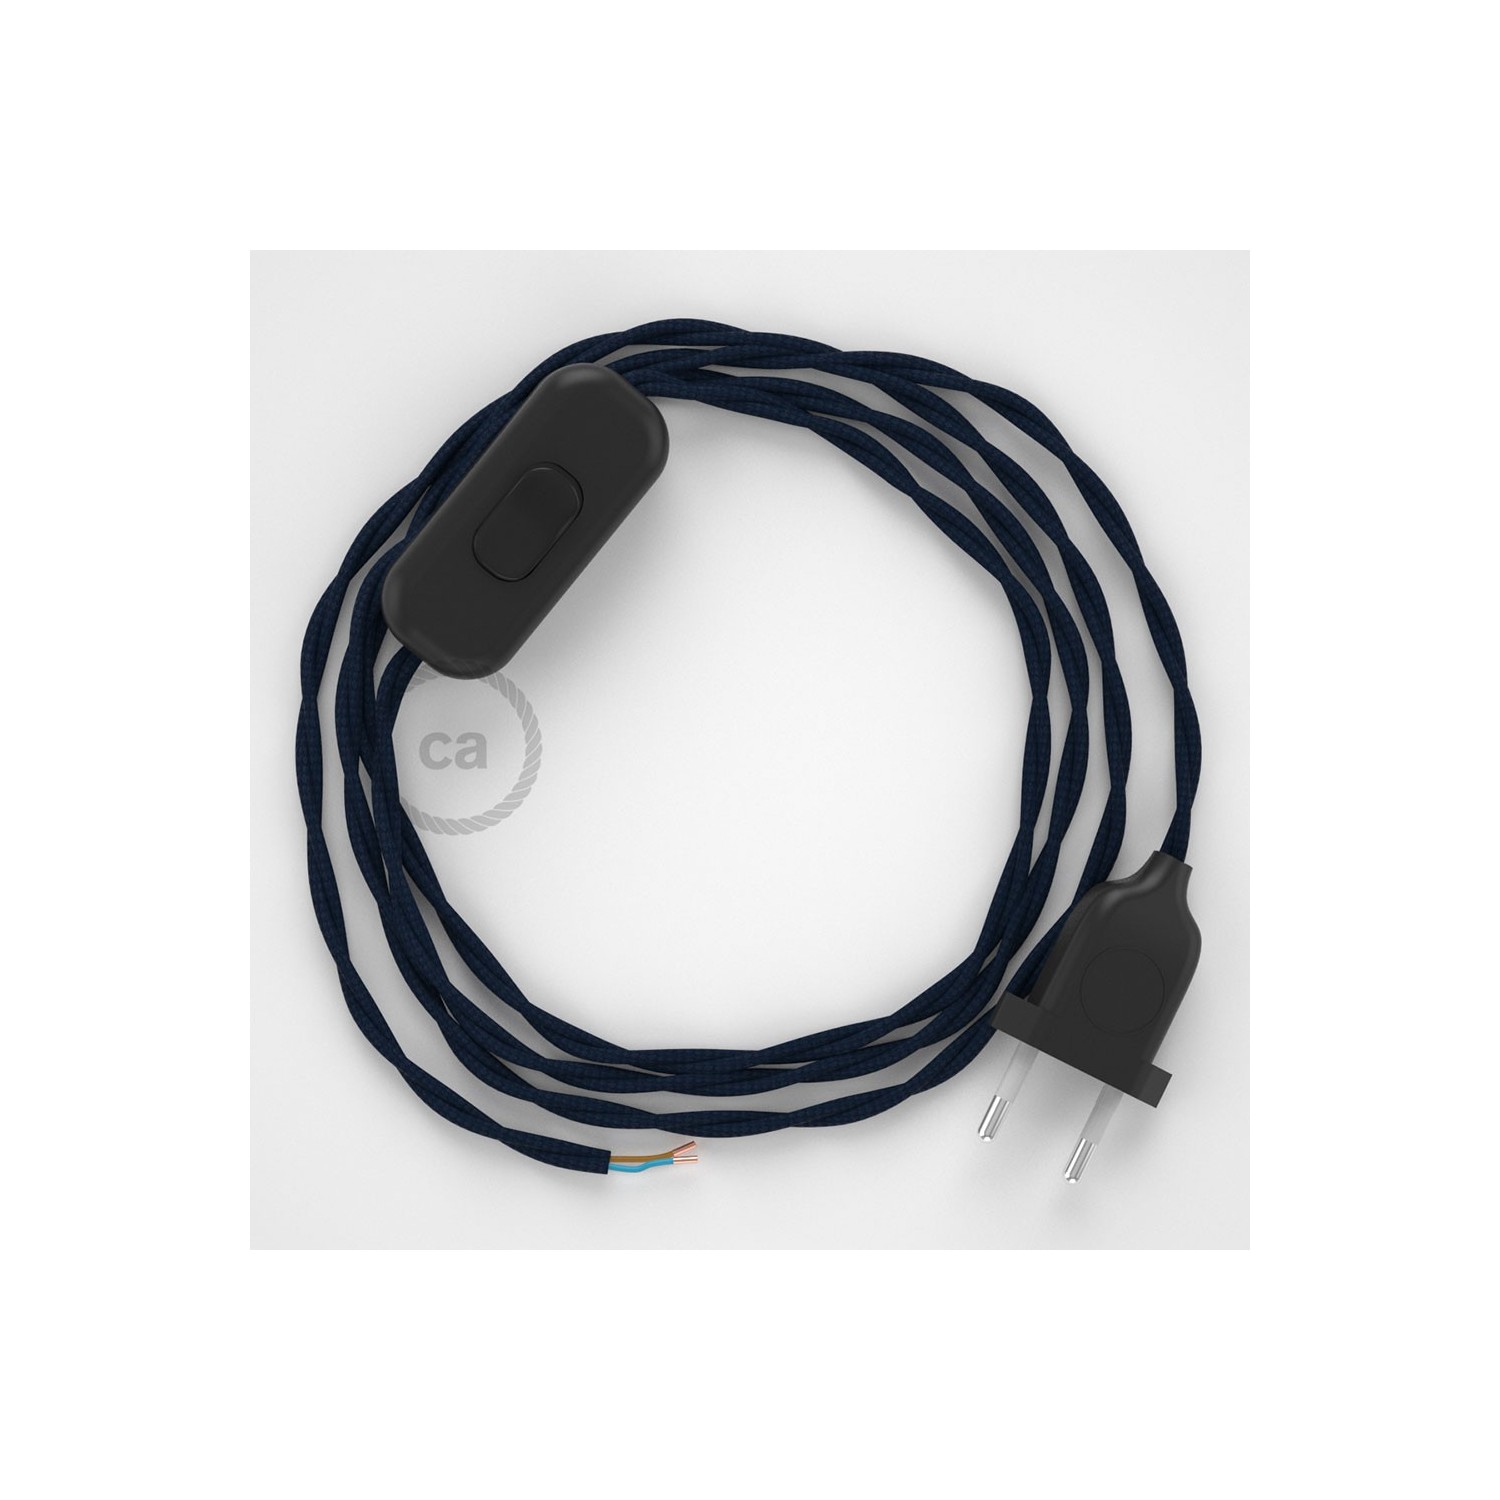 Cablaggio per lampada, cavo TM20 Effetto Seta Blu scuro 1,80 m. Scegli il colore dell'interruttore e della spina.